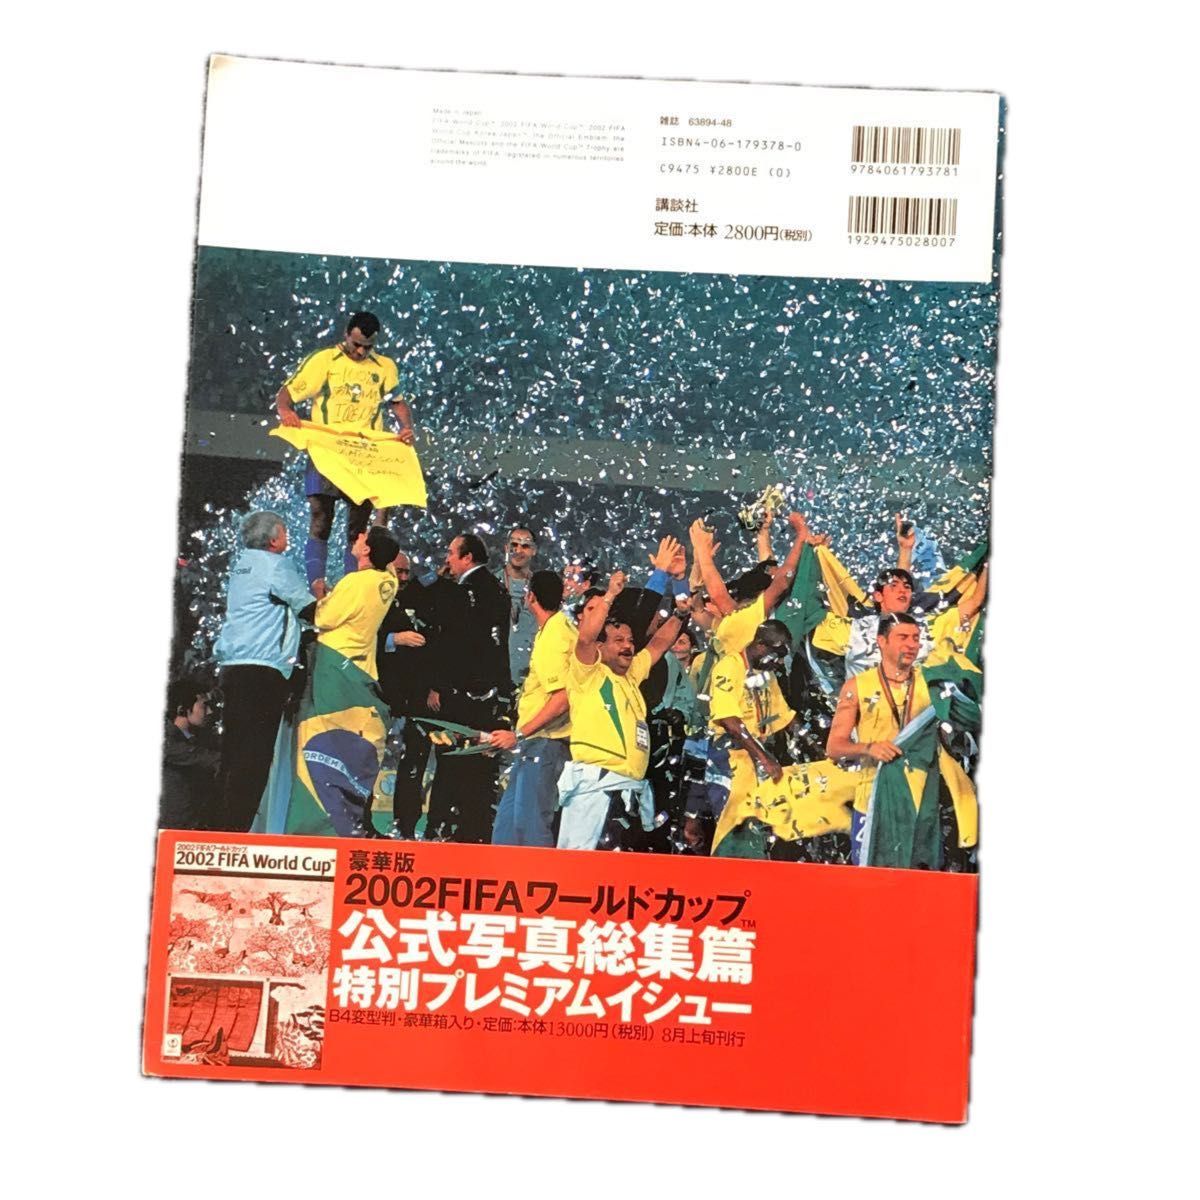 2002 FIFAワールドカップ 公式プログラム&公式写真総集編